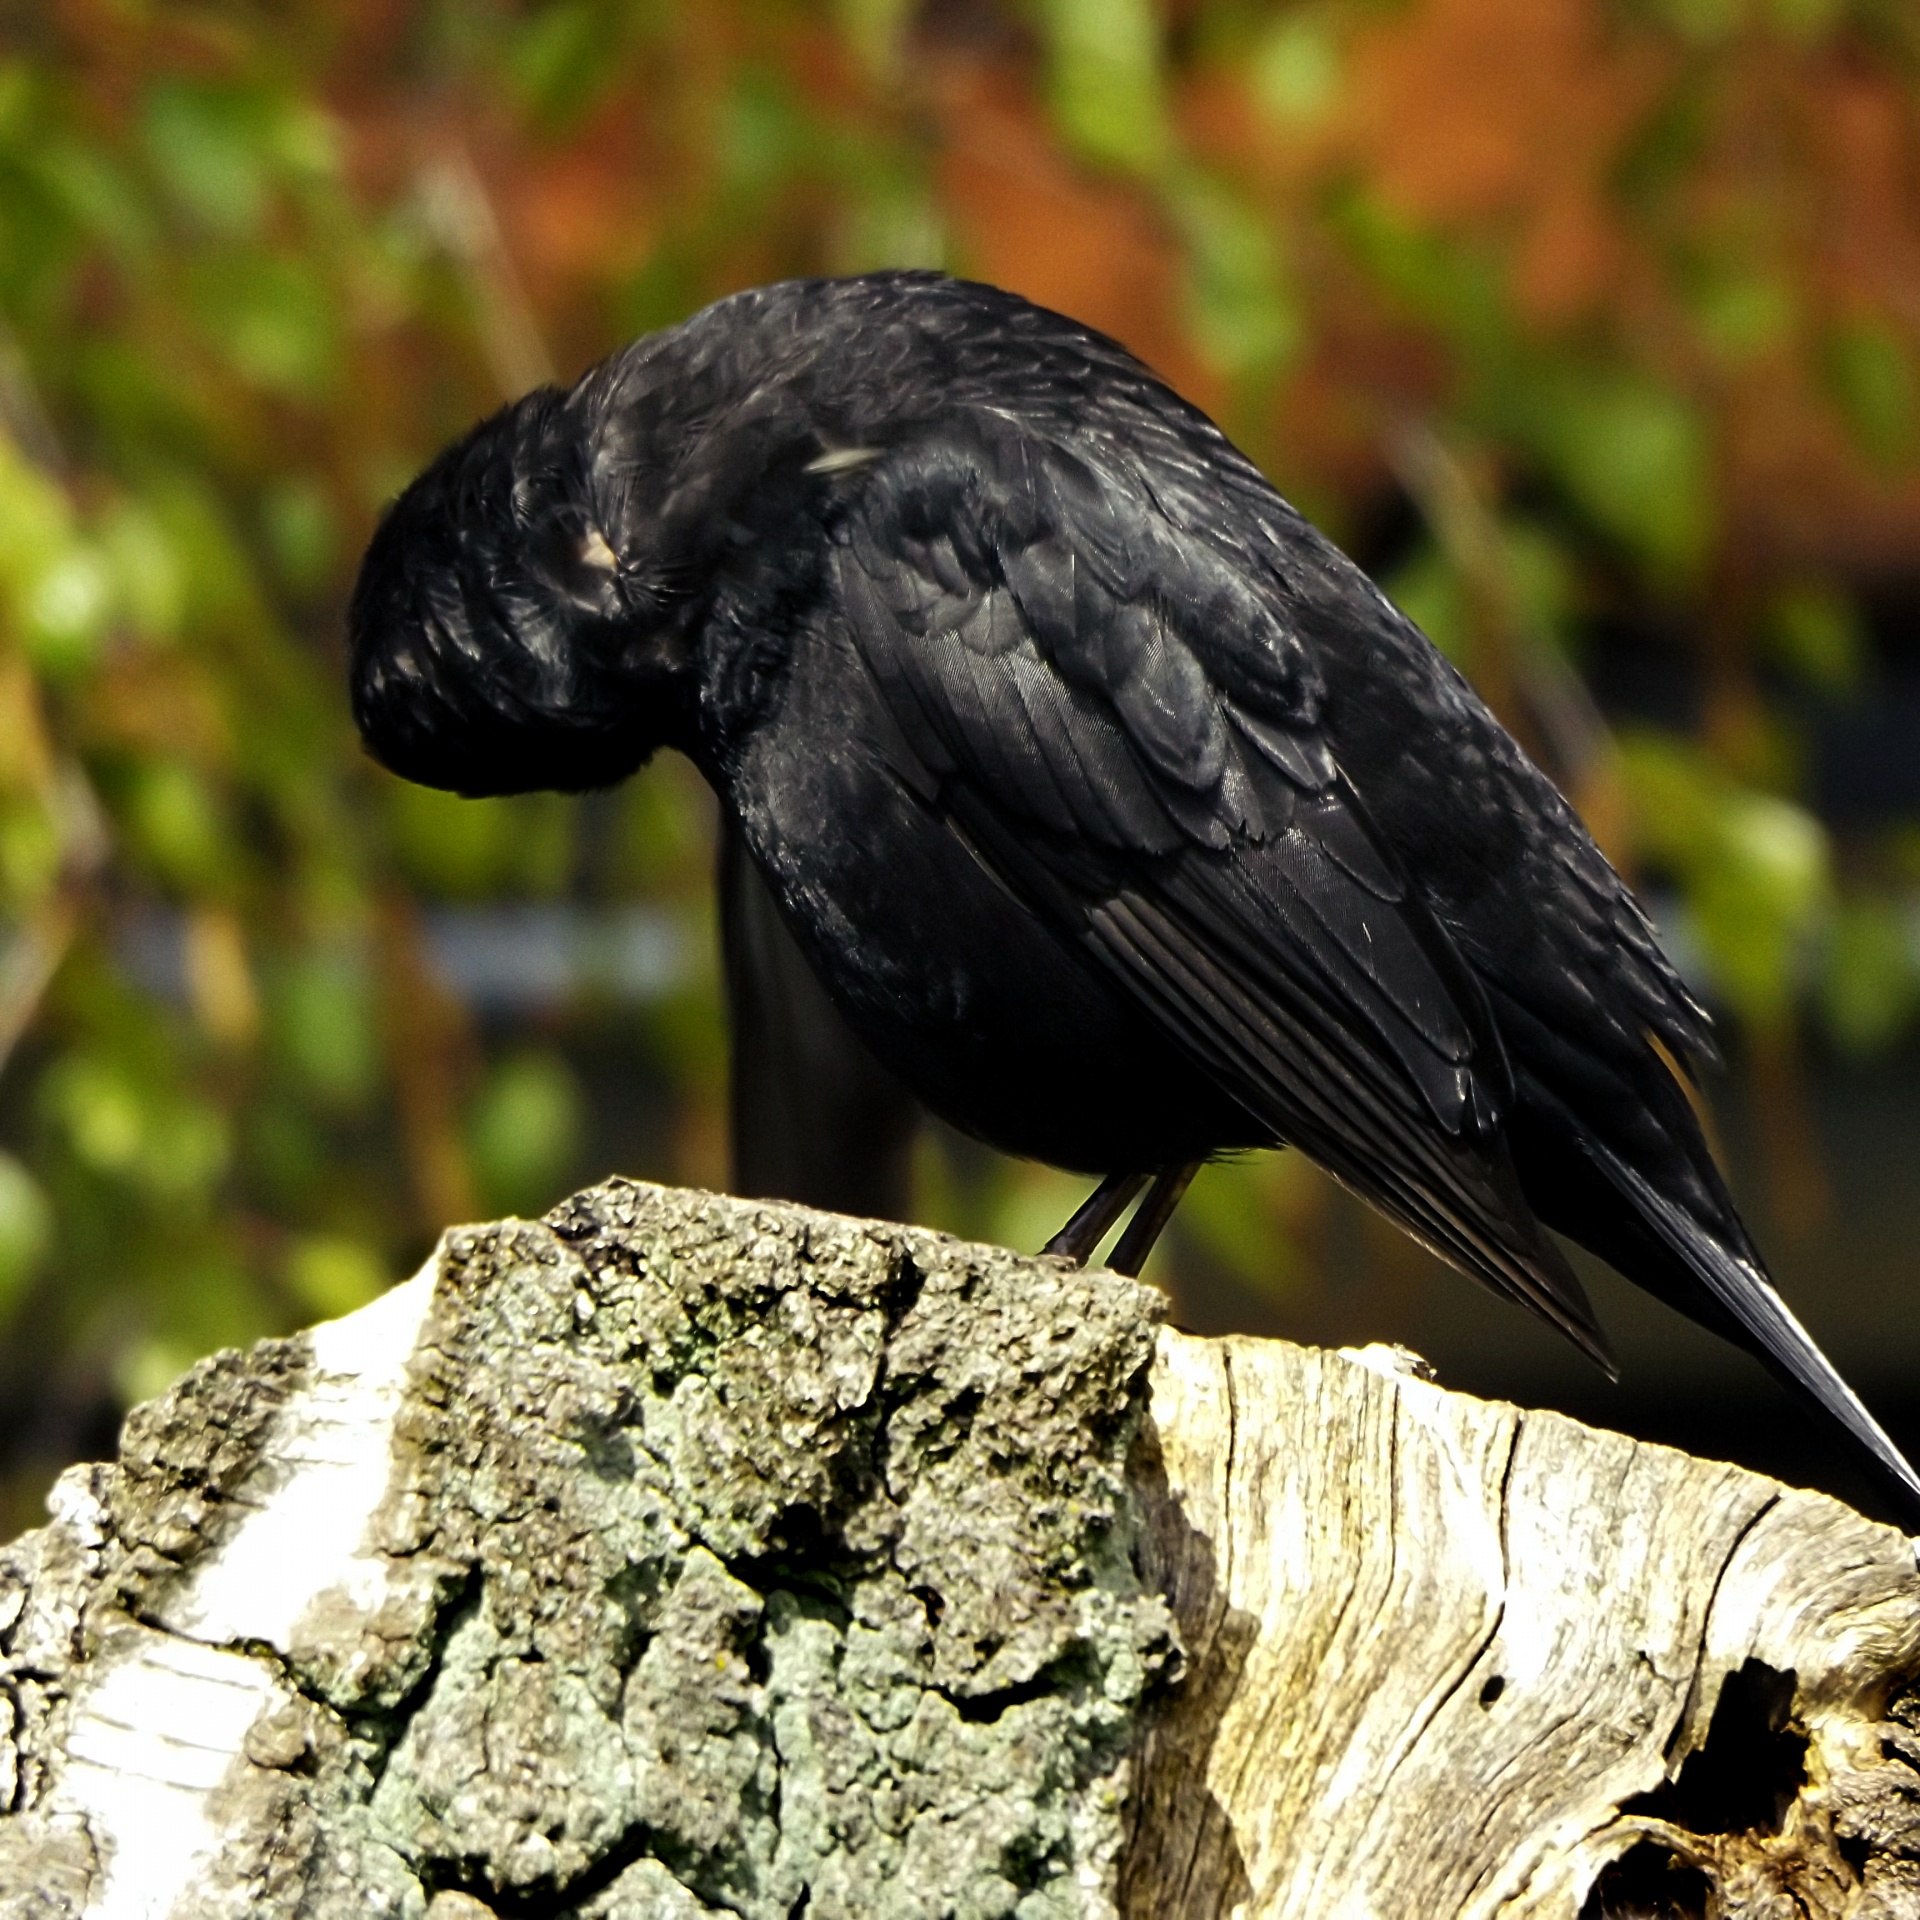 Черные птицы россии. Черная птичка. Черная птичка с черным клювом. Черная птица с длинным черным клювом. Небольшая черная птичка с черным клювом.